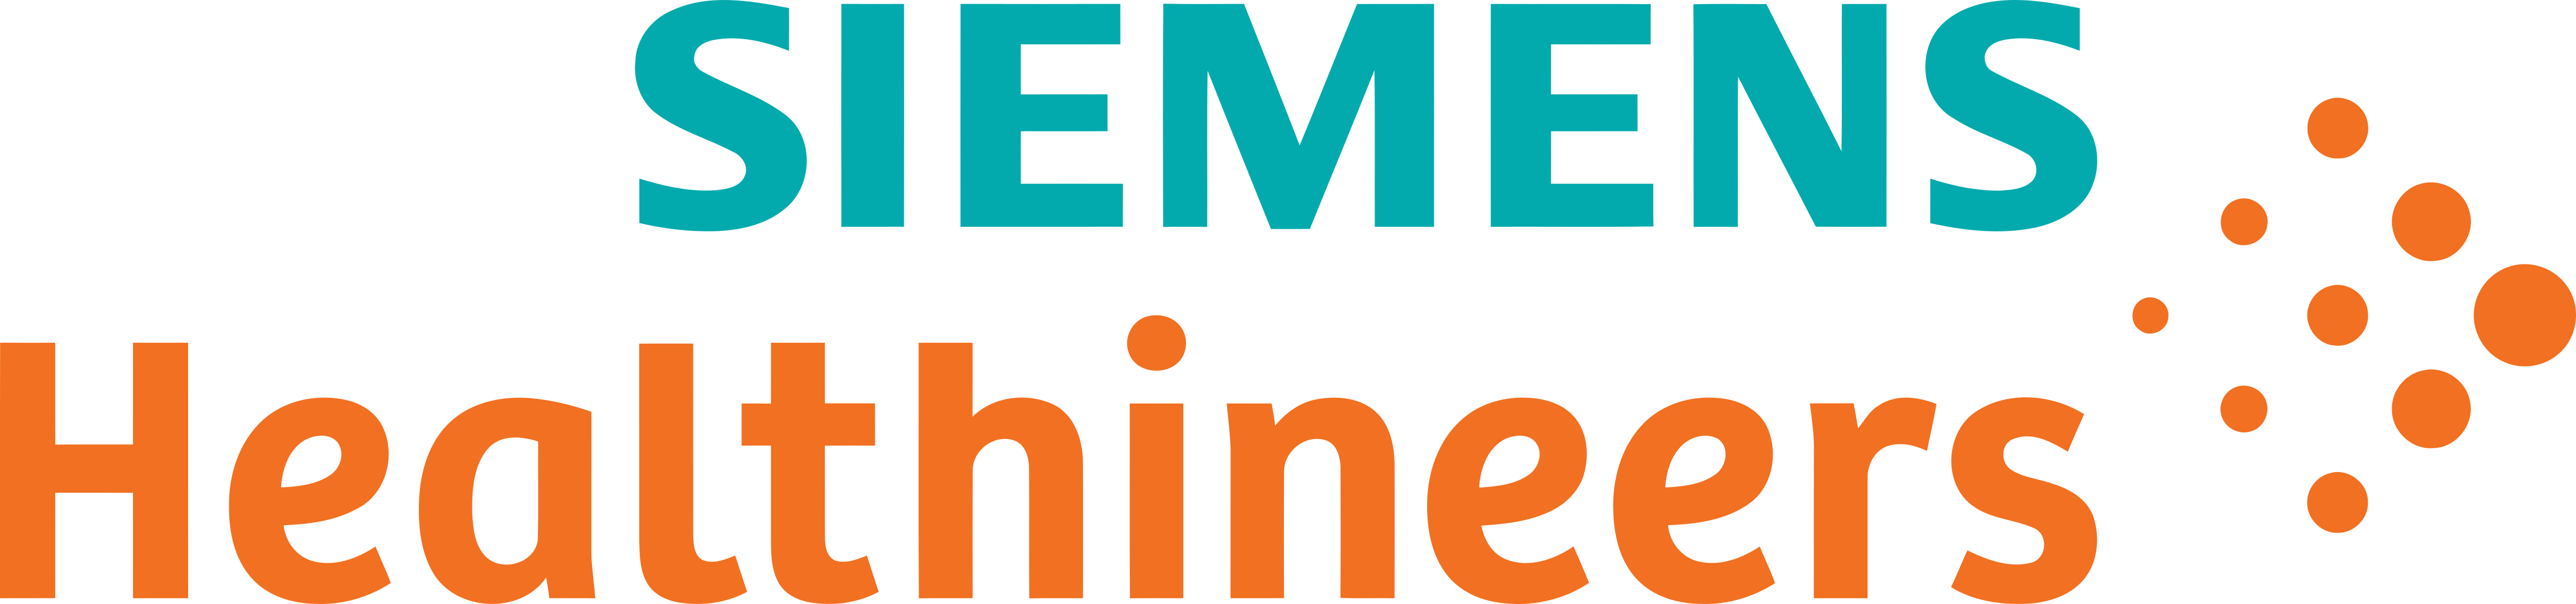 Siemens-Healthineers-logo.png